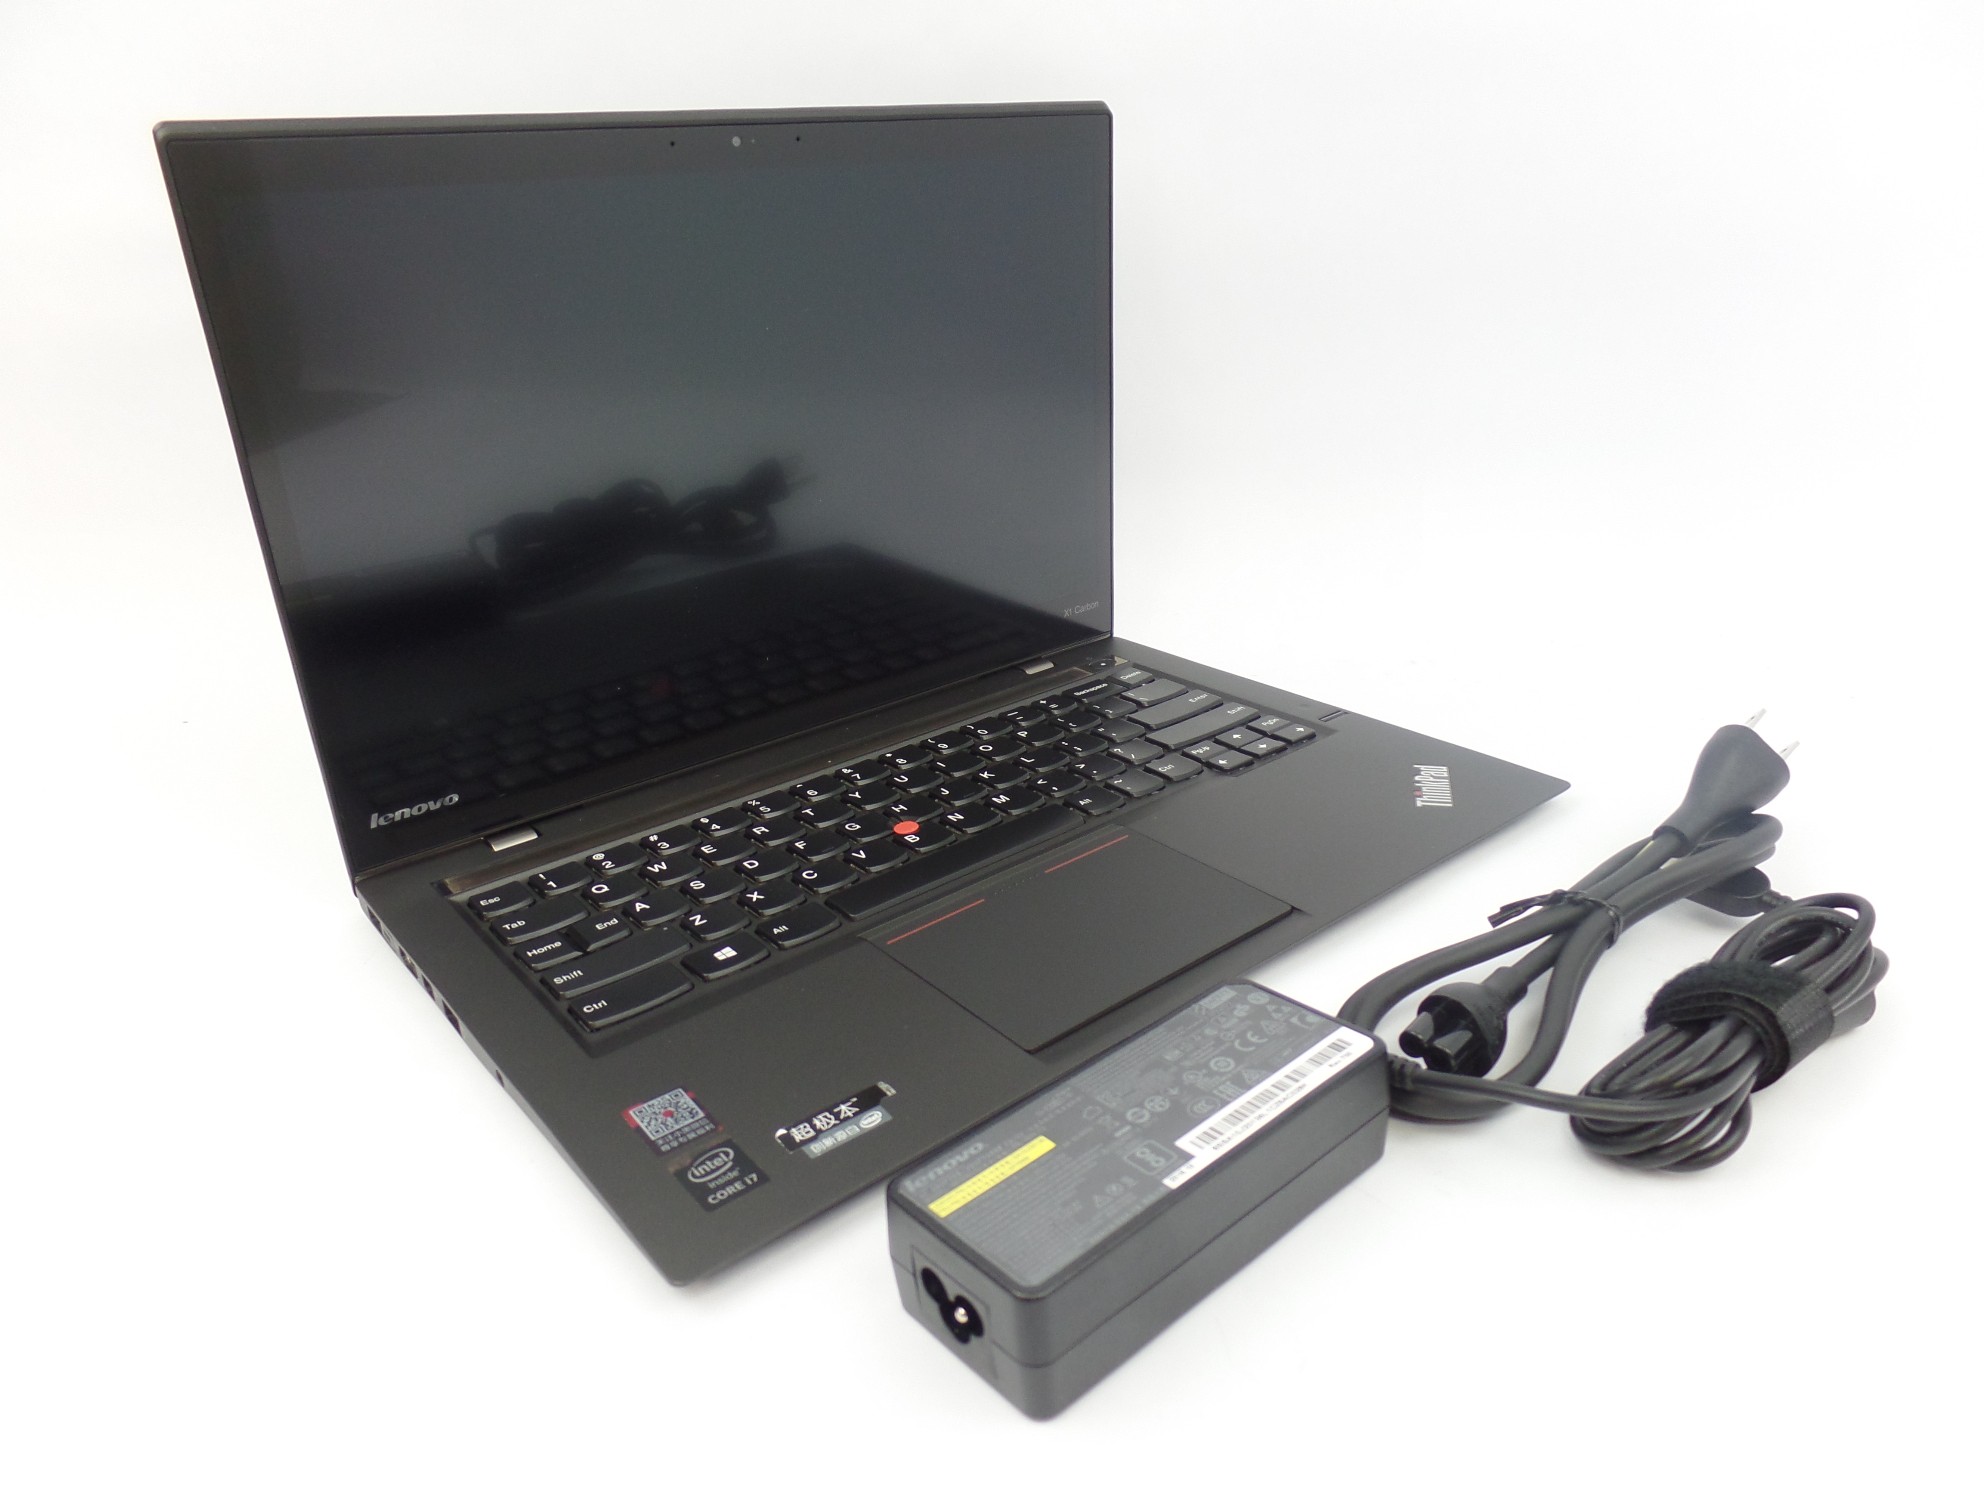 Lenovo Thinkpad X1 Carbon 2nd Gen 14" WQHD Touch i7-4550U 1.5GHz 8GB 512GB W10P 